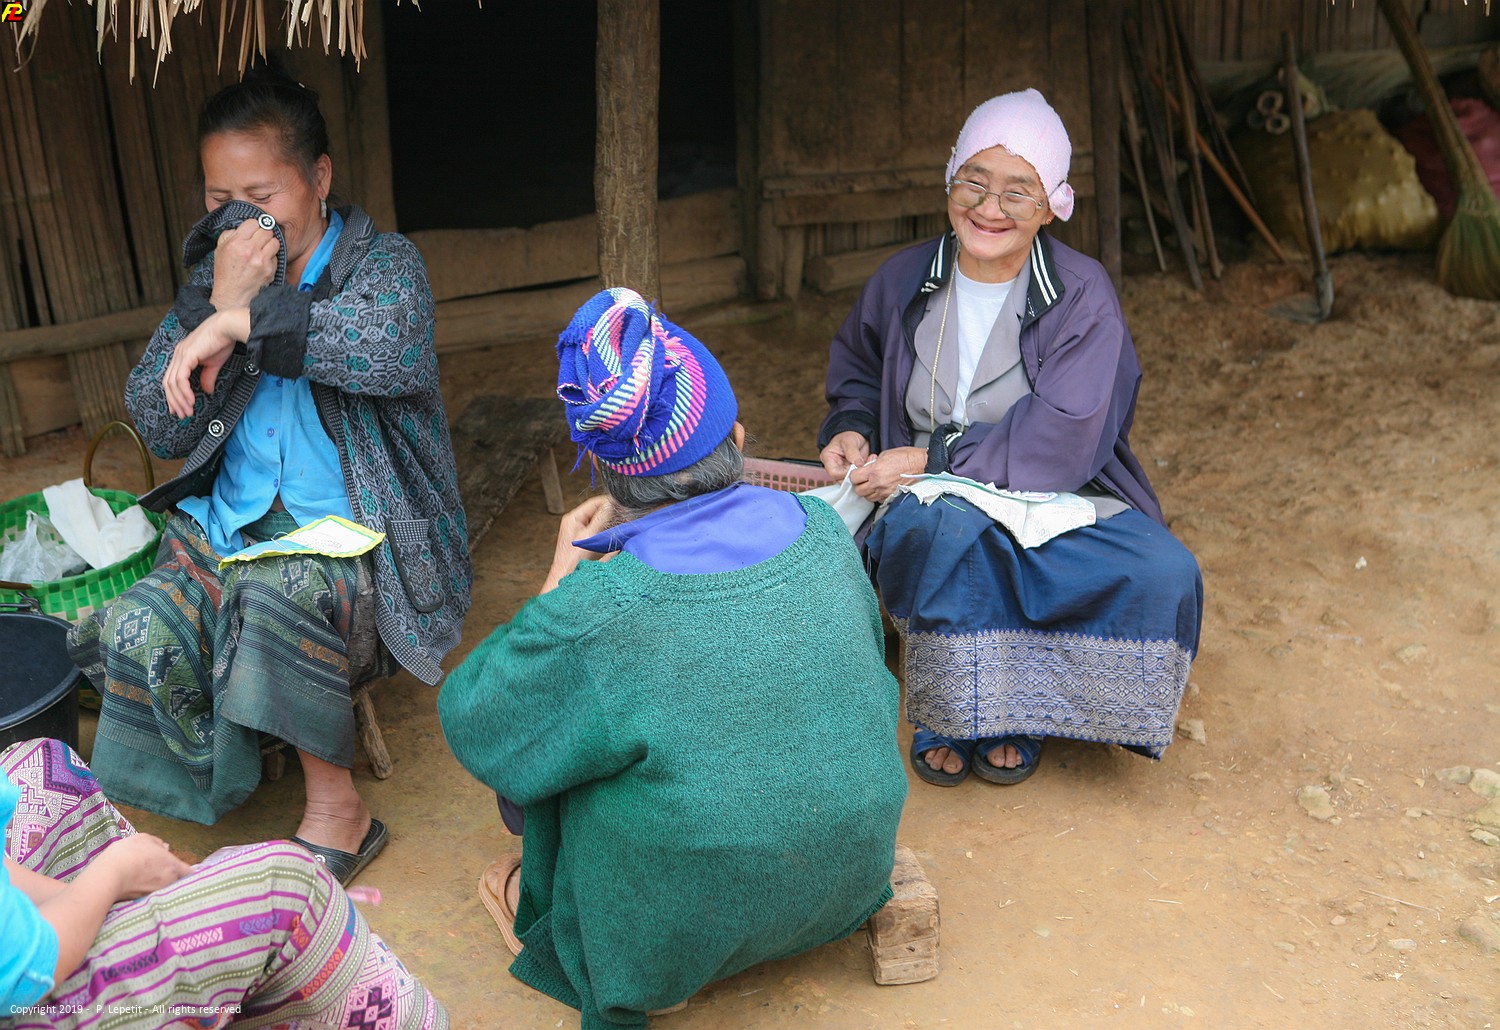 Hmong villages